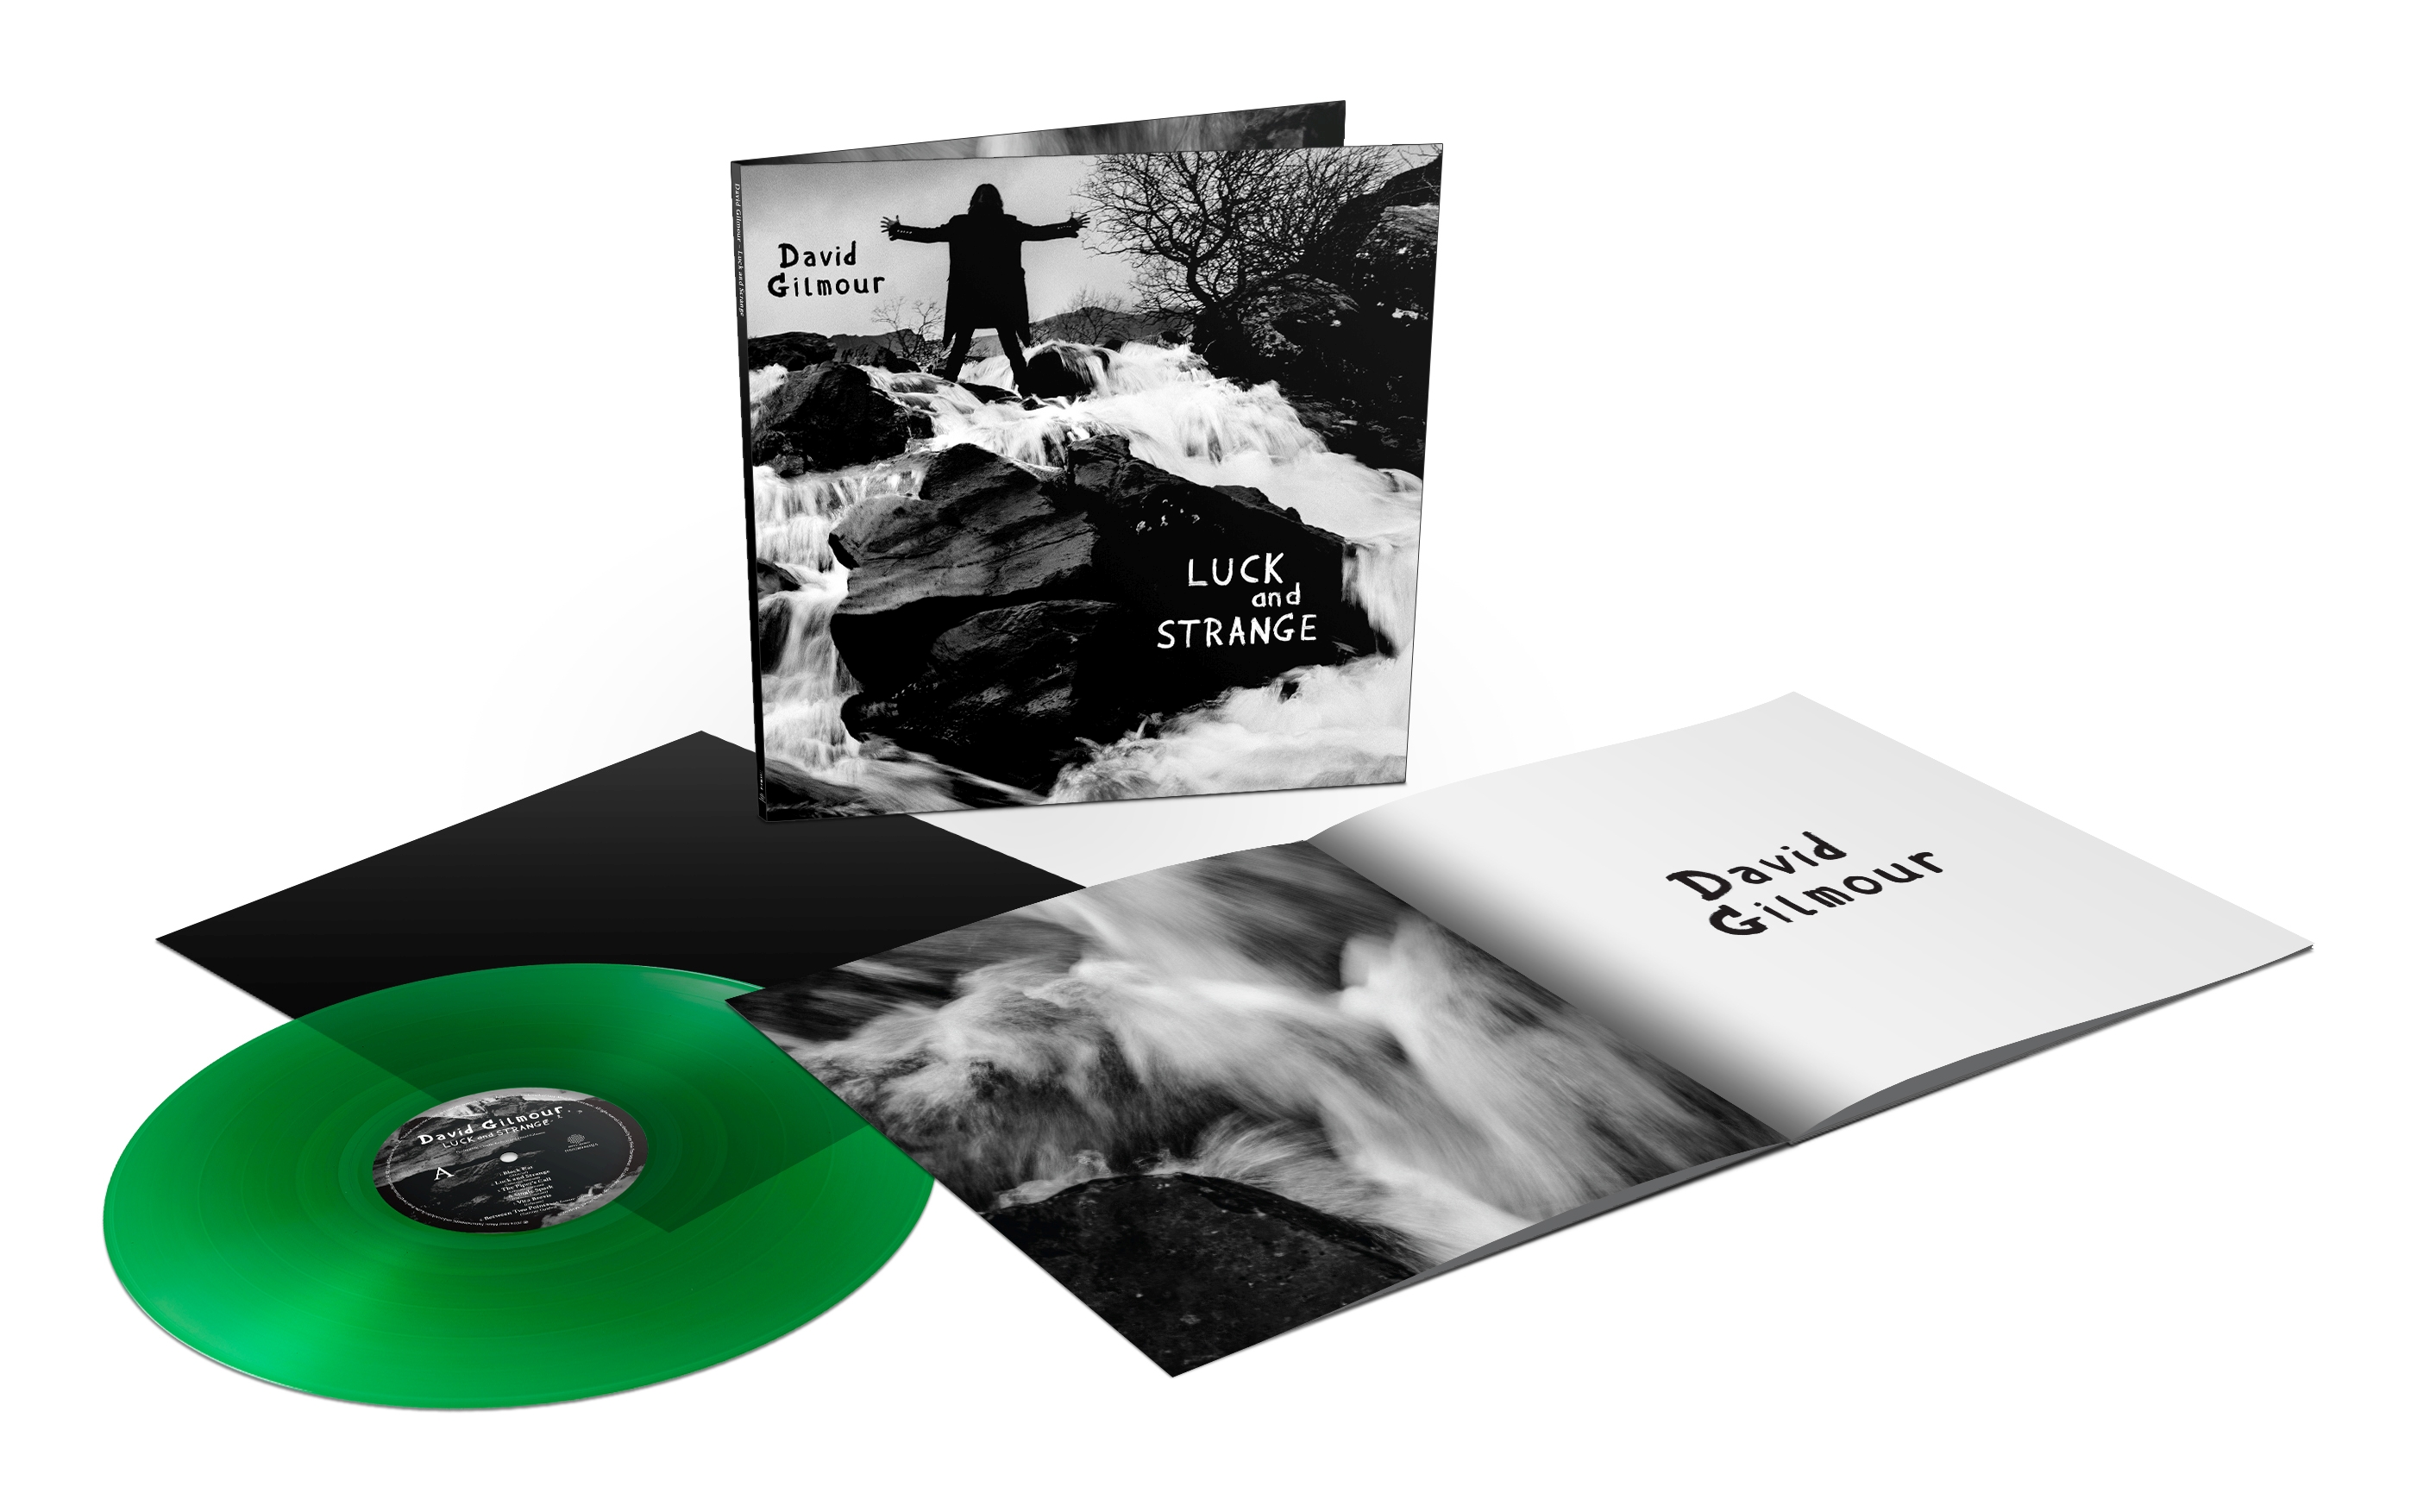 david-gilmour-luck-and-strange-emerald-groen-lp-vinyl-kopen